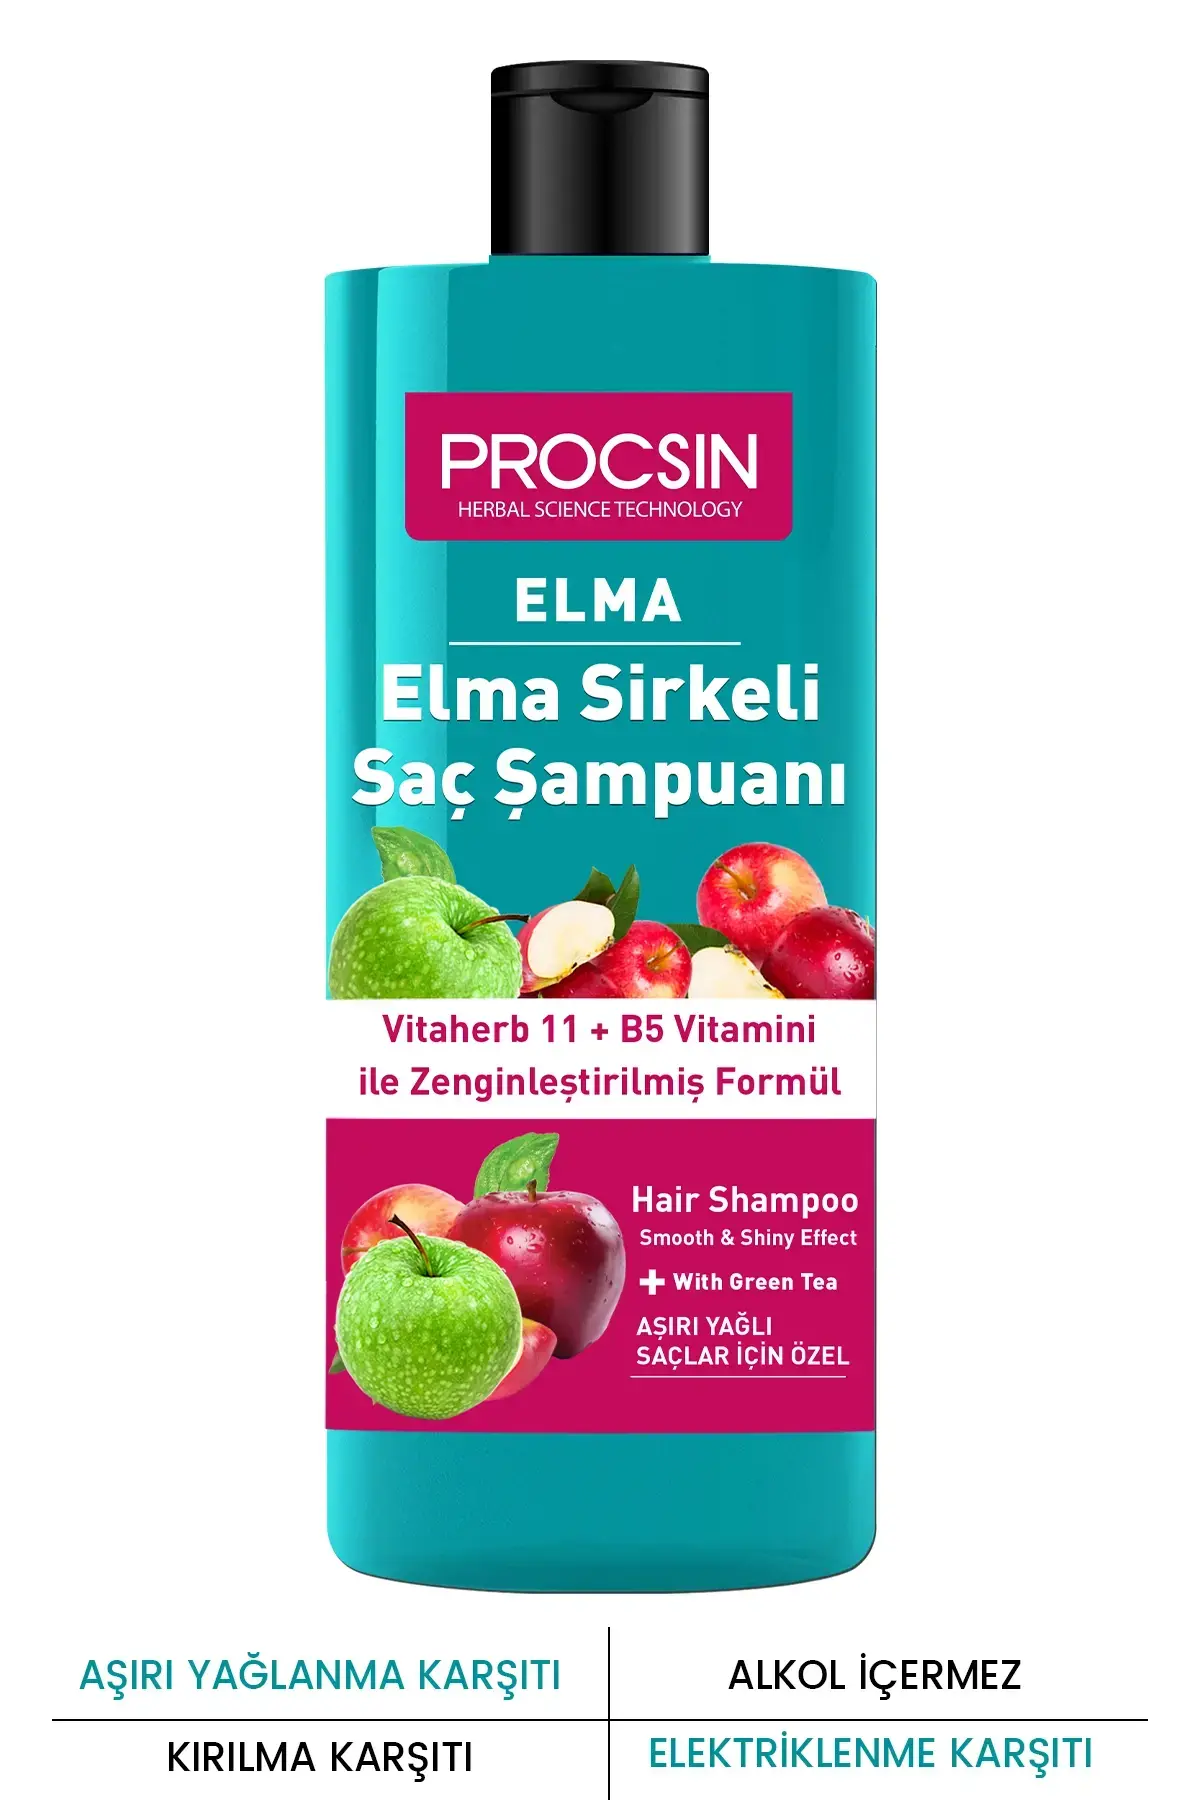 PROCSIN Aşırı Yağlanma Karşıtı Elma Sirkesi Şampuanı 300 ML - 1